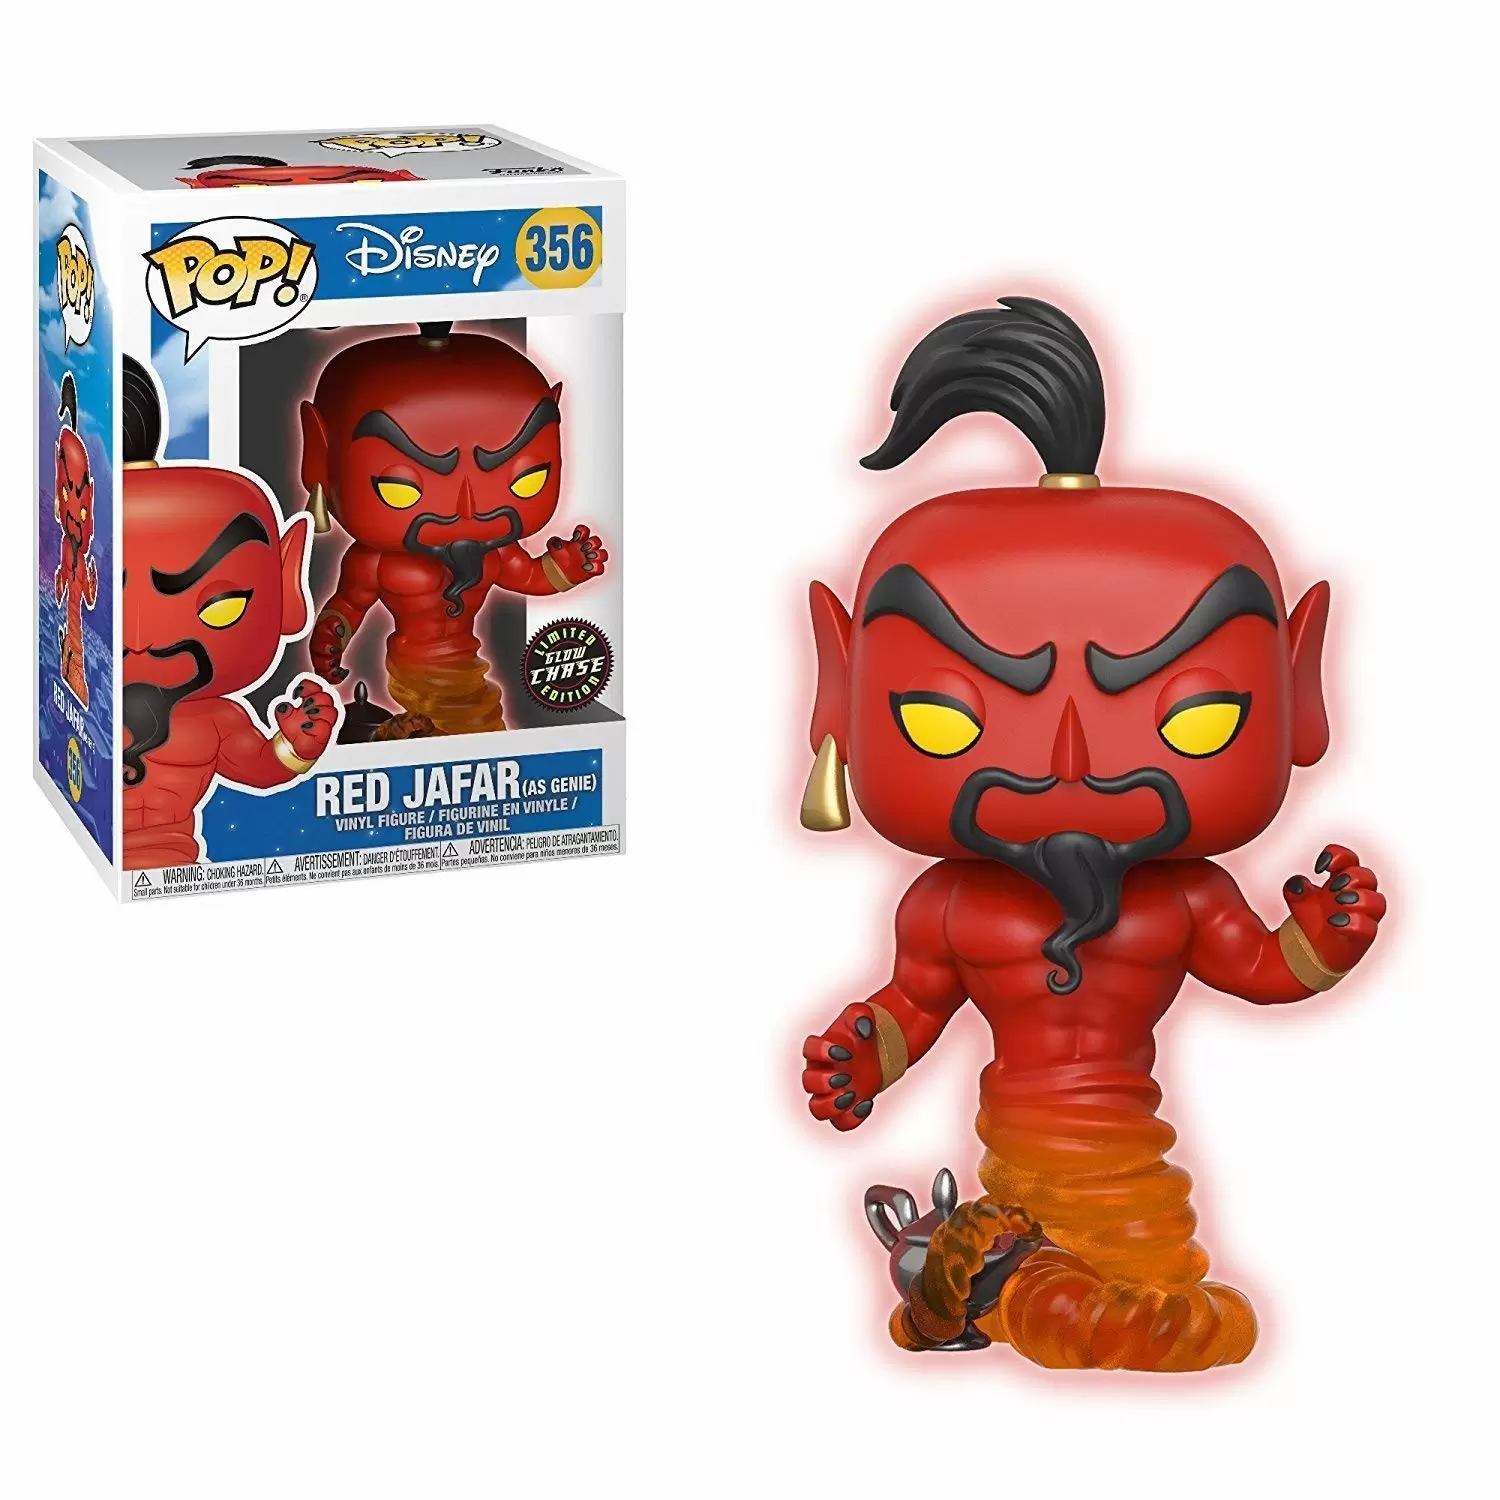 POP! Disney - Aladdin - Red Jafar (as Genie) Glows In The Dark